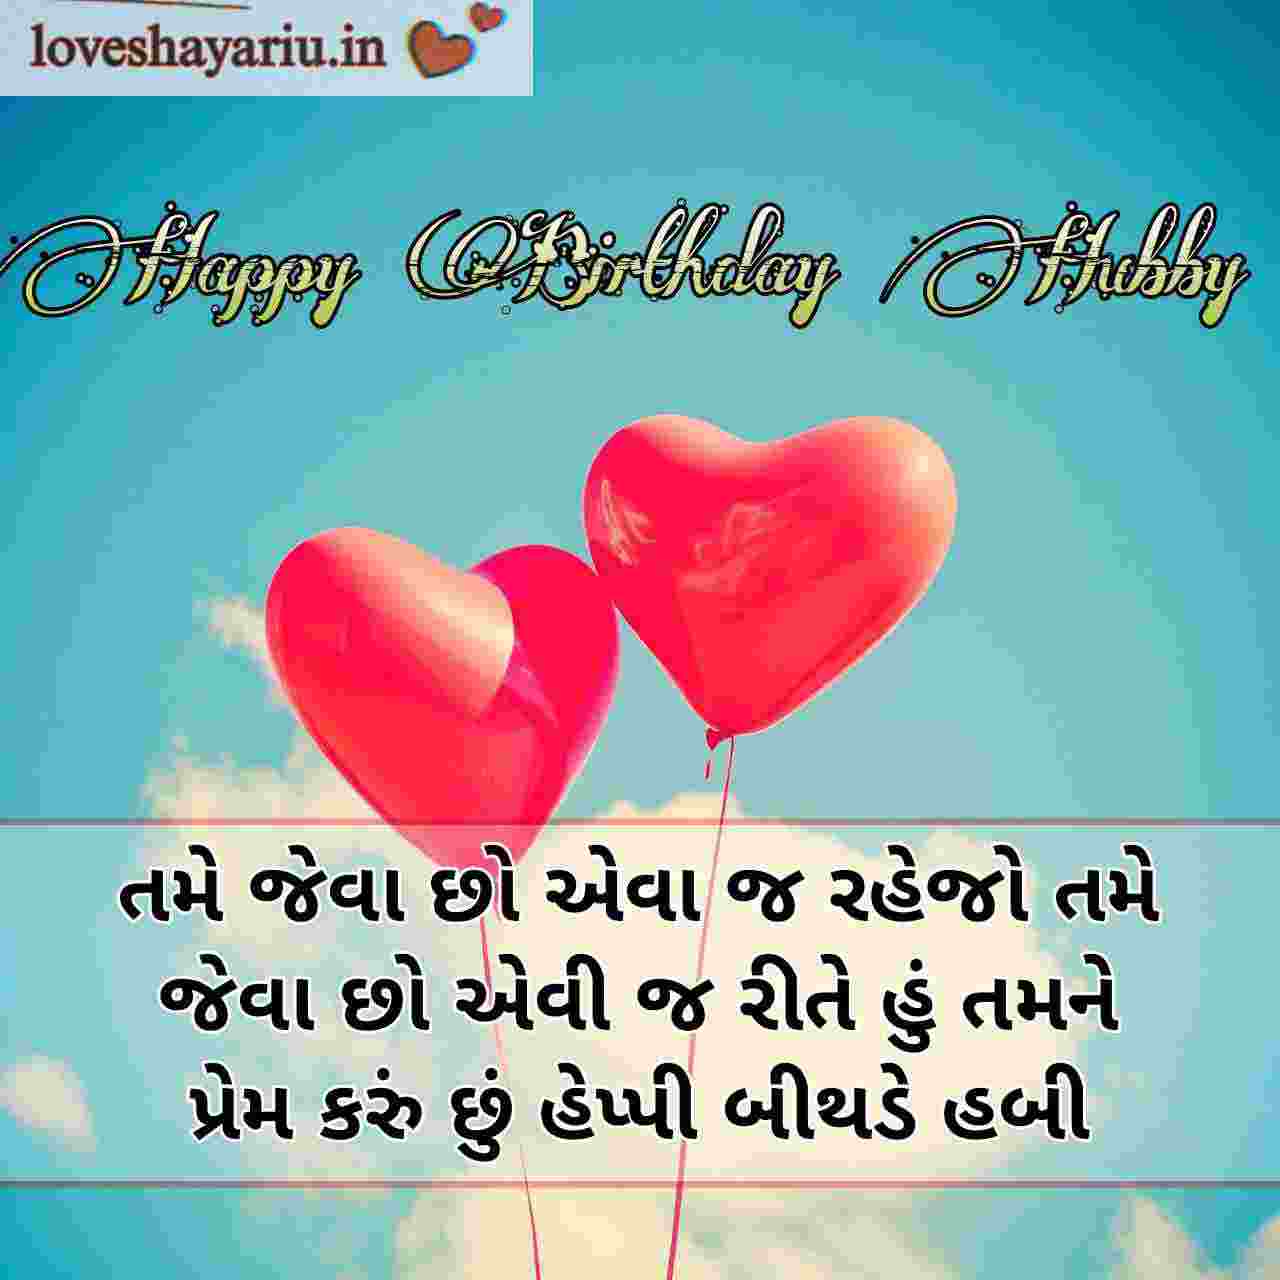 Birthday Wishes For Husband In Gujarati,Husband Birthday Wishes Gujarati,Happy Birthday Wishes For Husband In Gujarati,Birthday Wishes For Husband In Gujarati Language,my husband birthday wishes gujarati